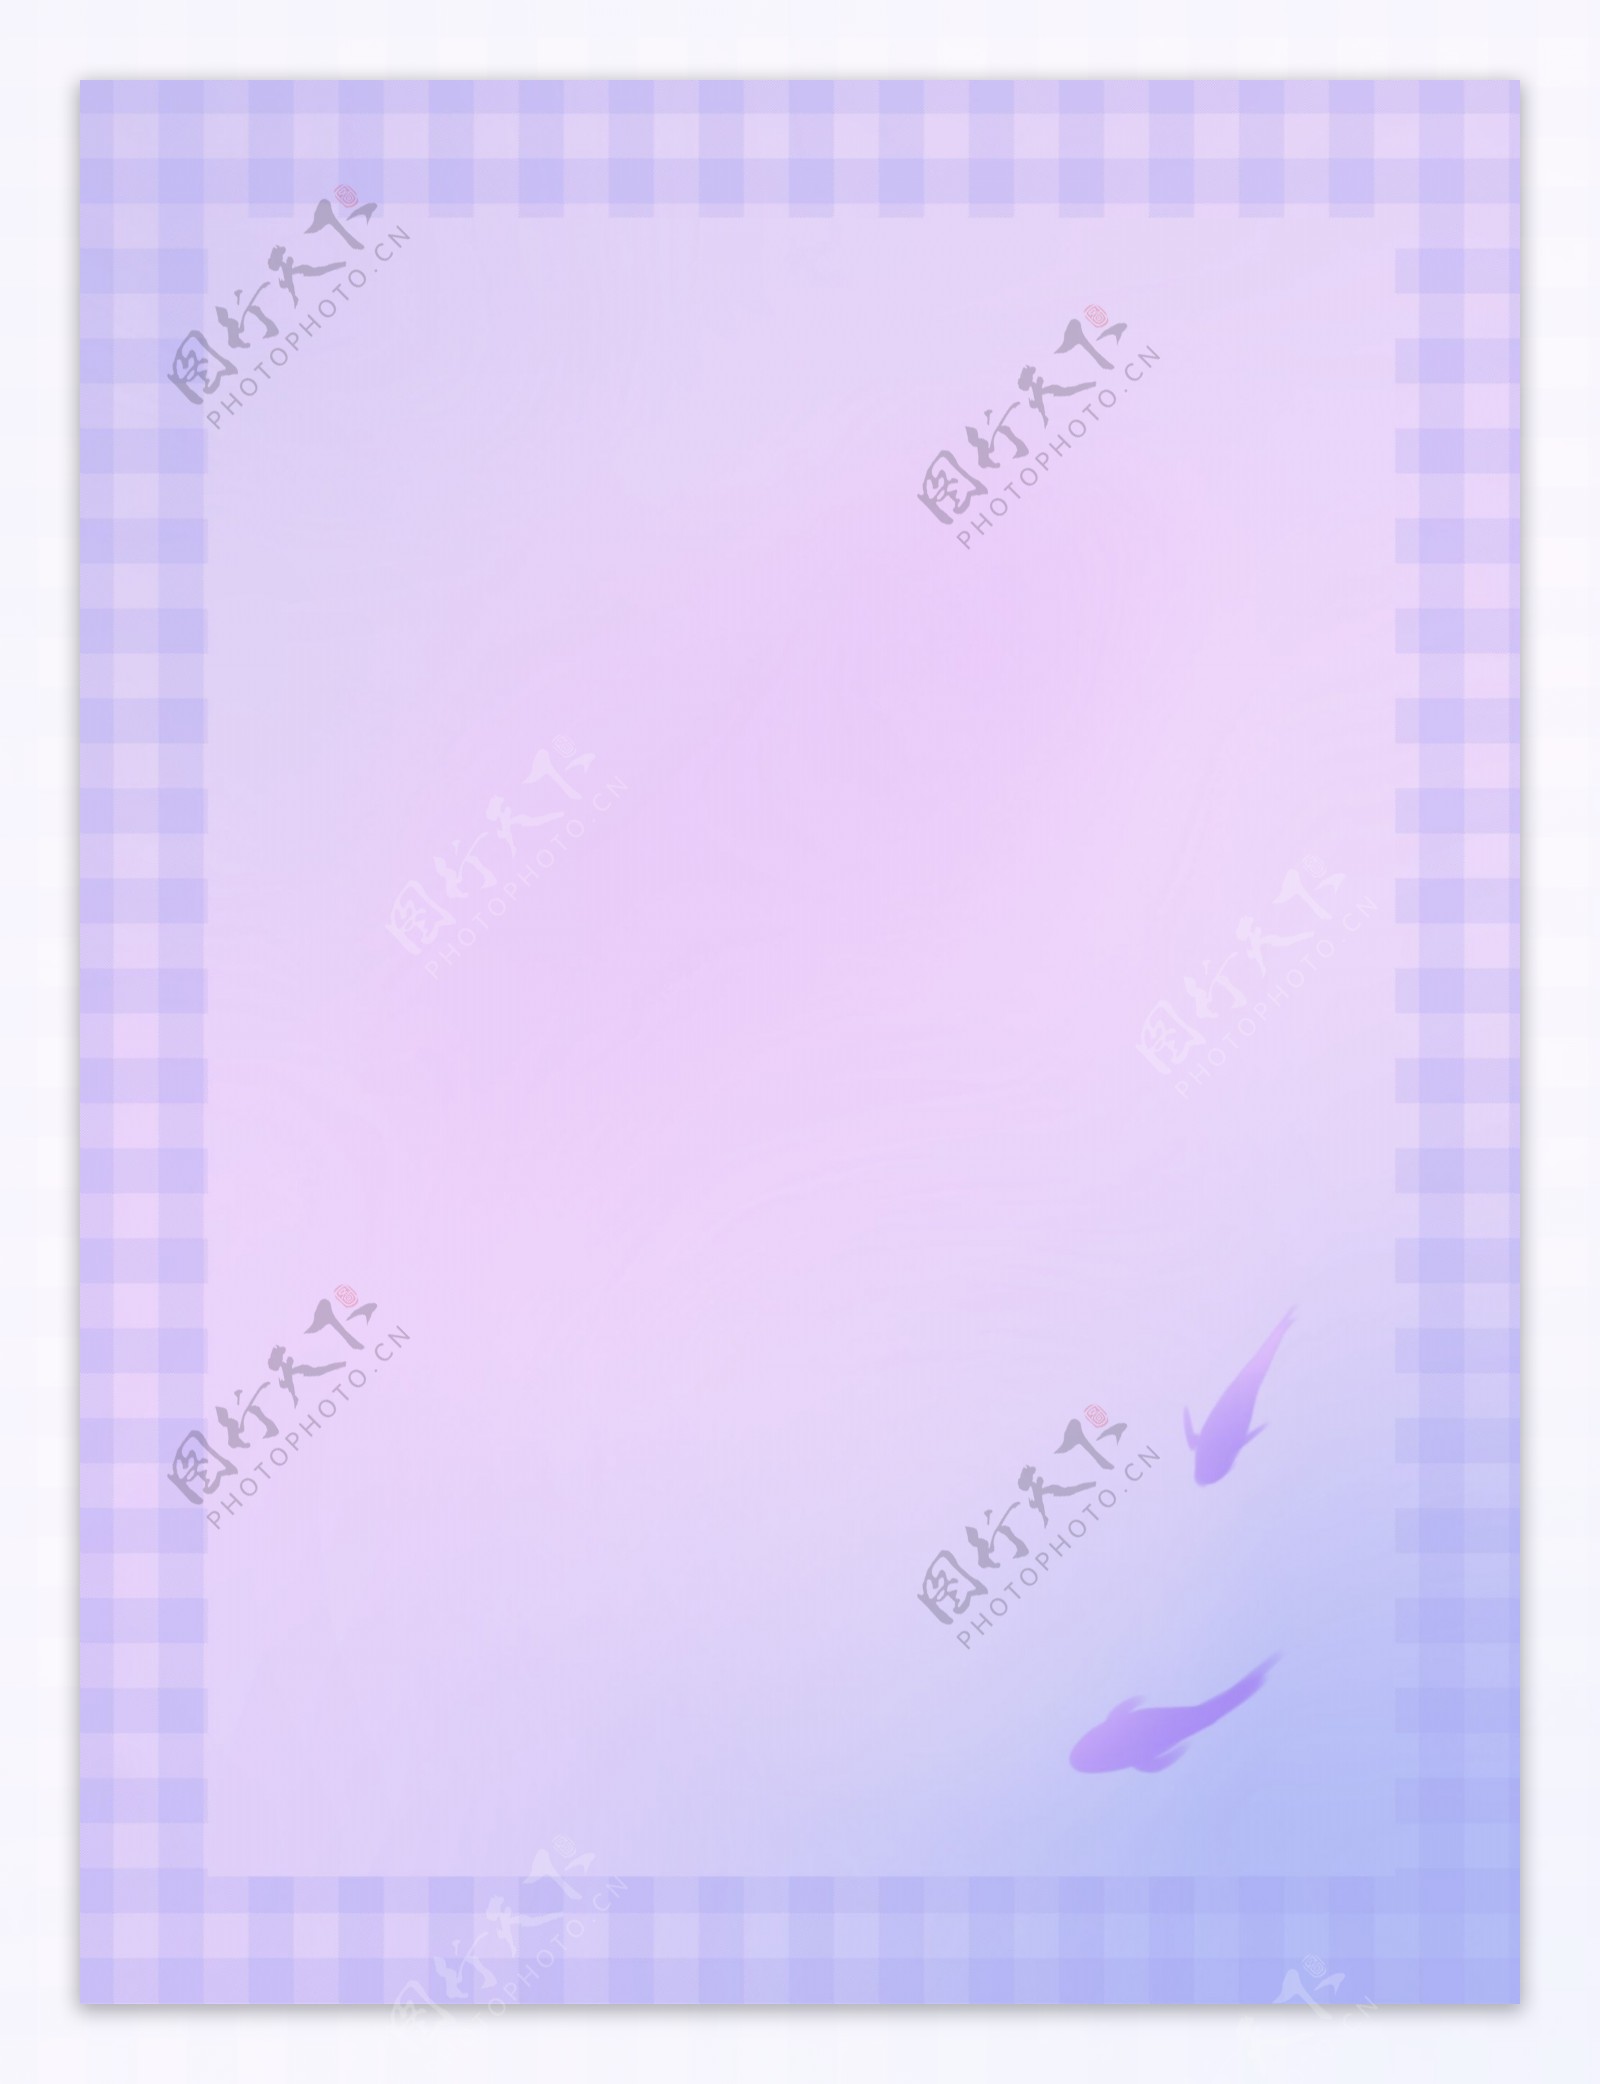 水彩粉色紫色游鱼